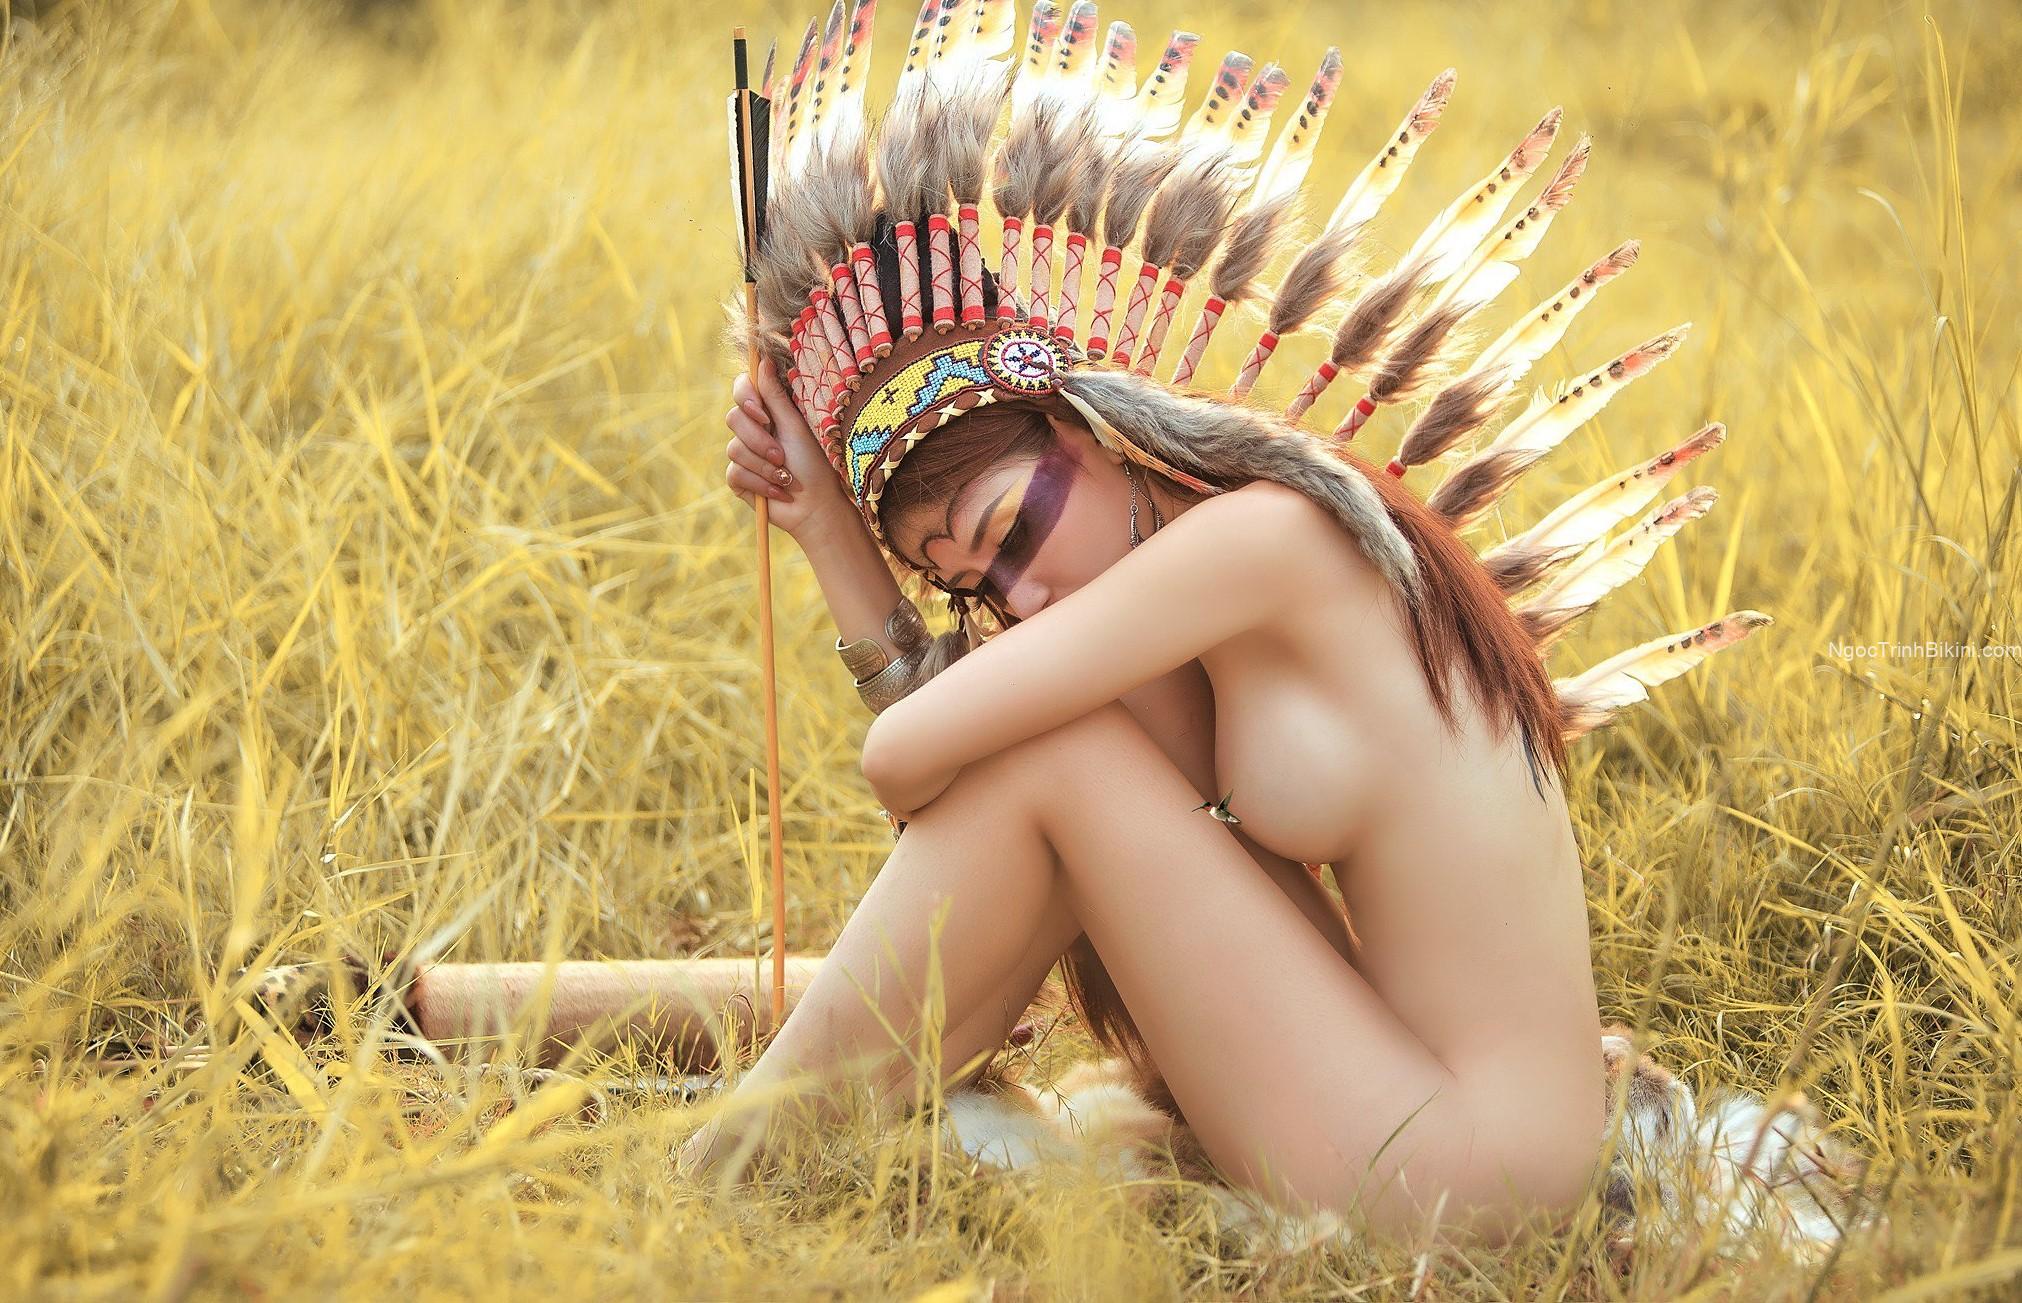 Bầu ngực căng tròn của cô gái thổ dân khỏa thân